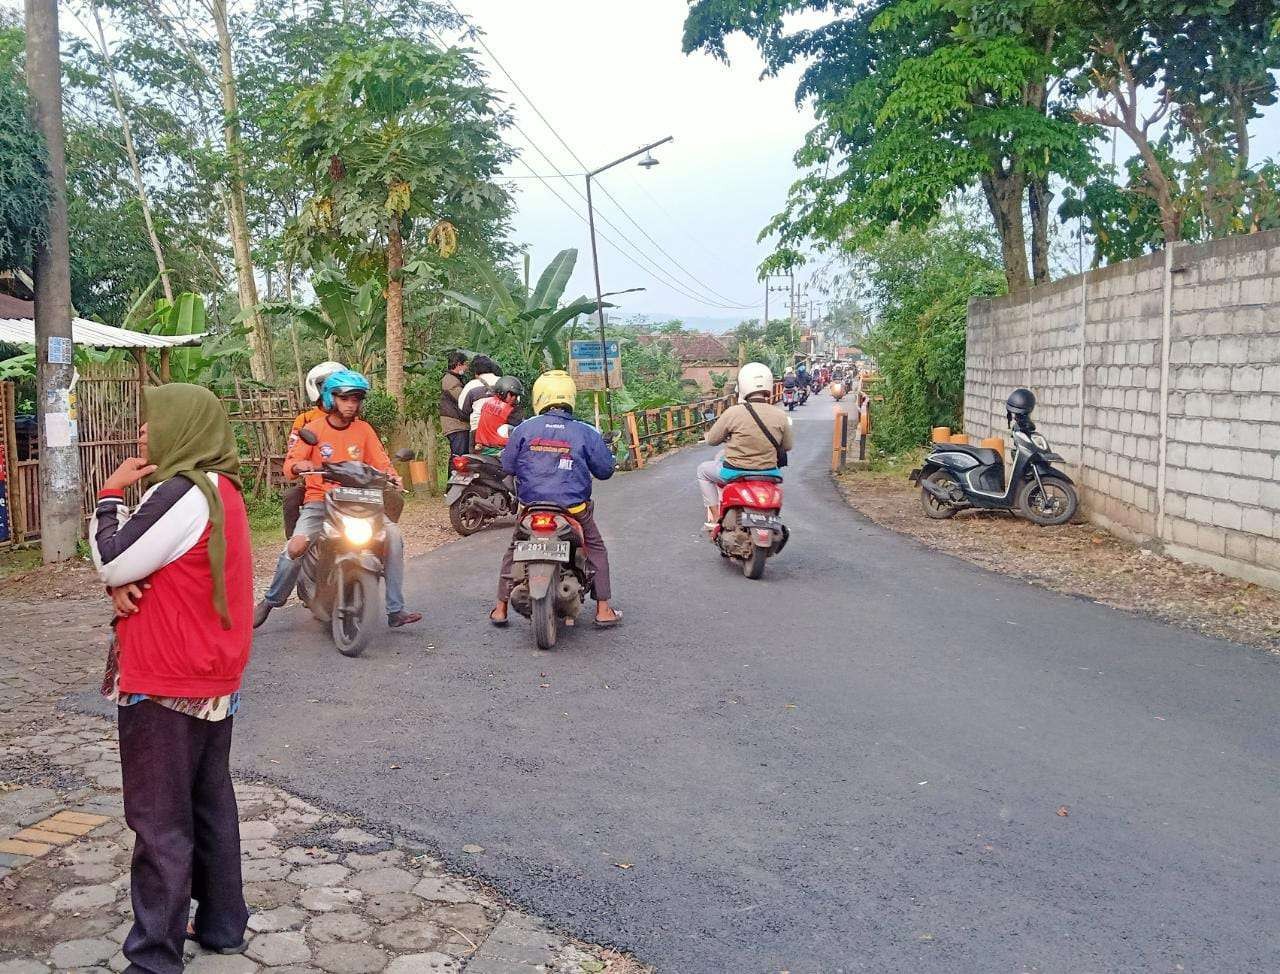 Lokasi penemuan sepeda motor korban bunuh diri di Jembatan Lowokdoro, Kota Malang, Jawa Timur. Ia diduga sempat menulis surat sebelum mengakhiri hidup. (Foto: Lalu Theo/Ngopibareng.id)